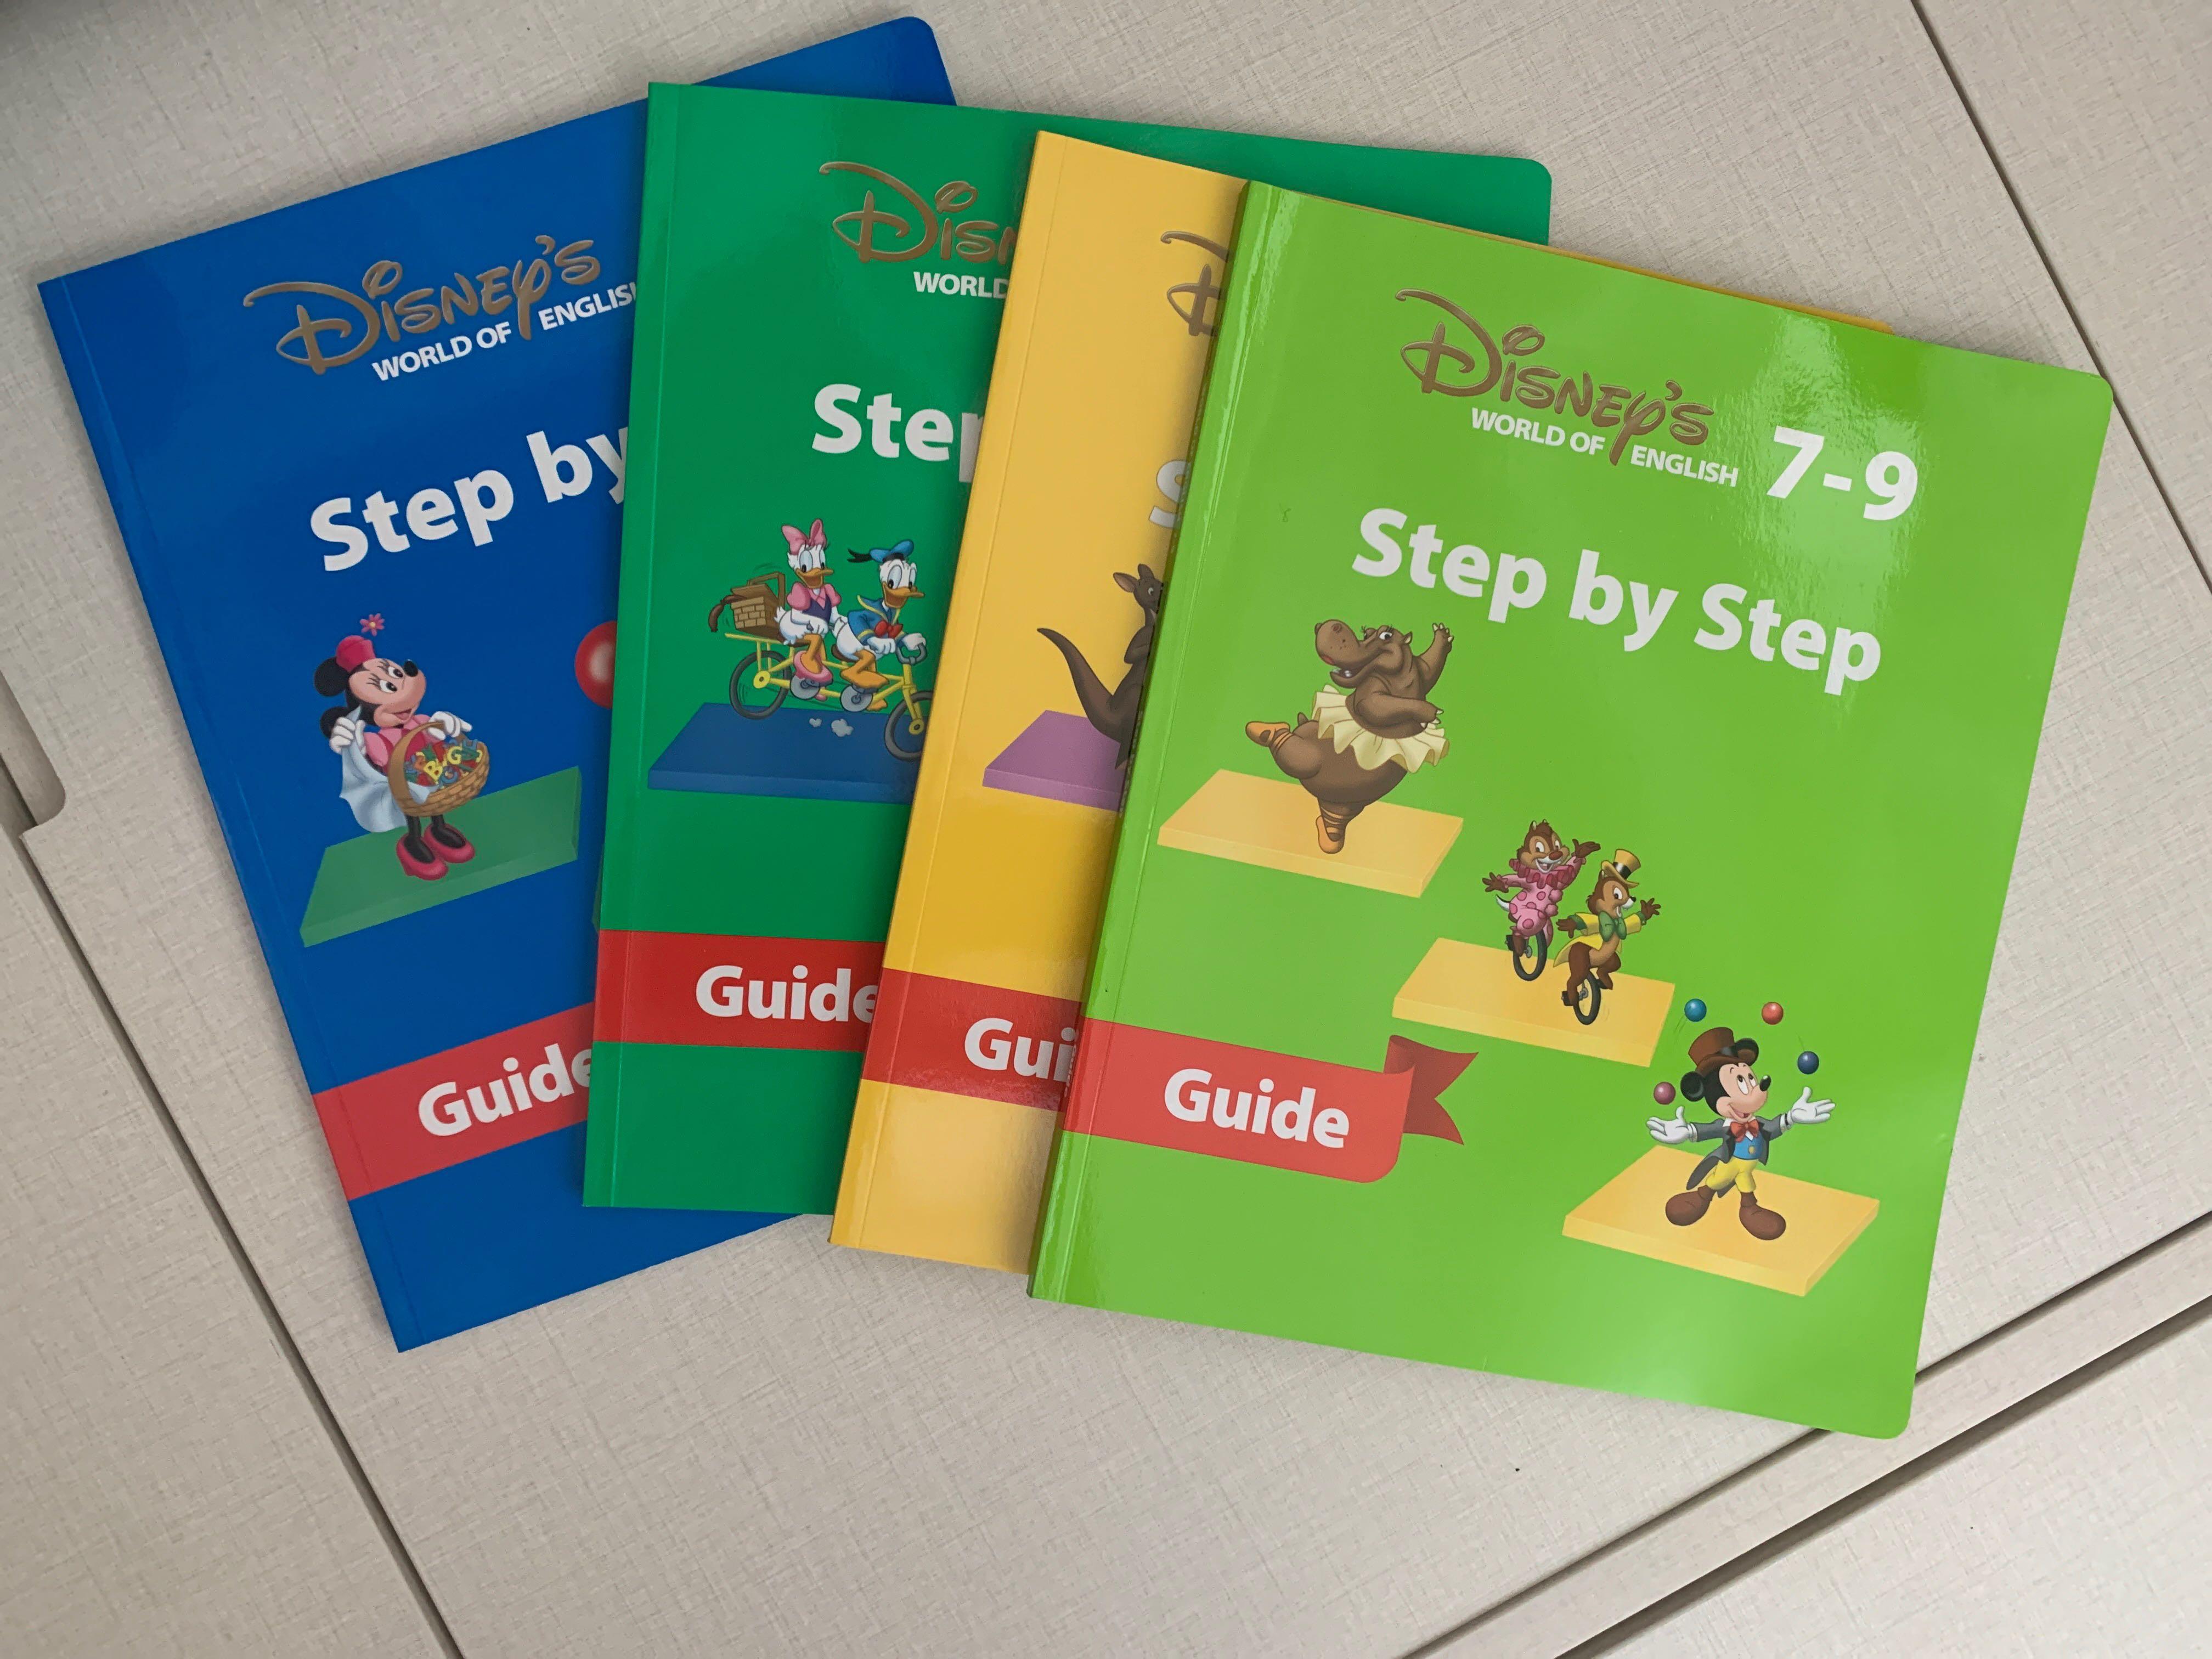 Disney world of English step by stepディズニー英語システム 